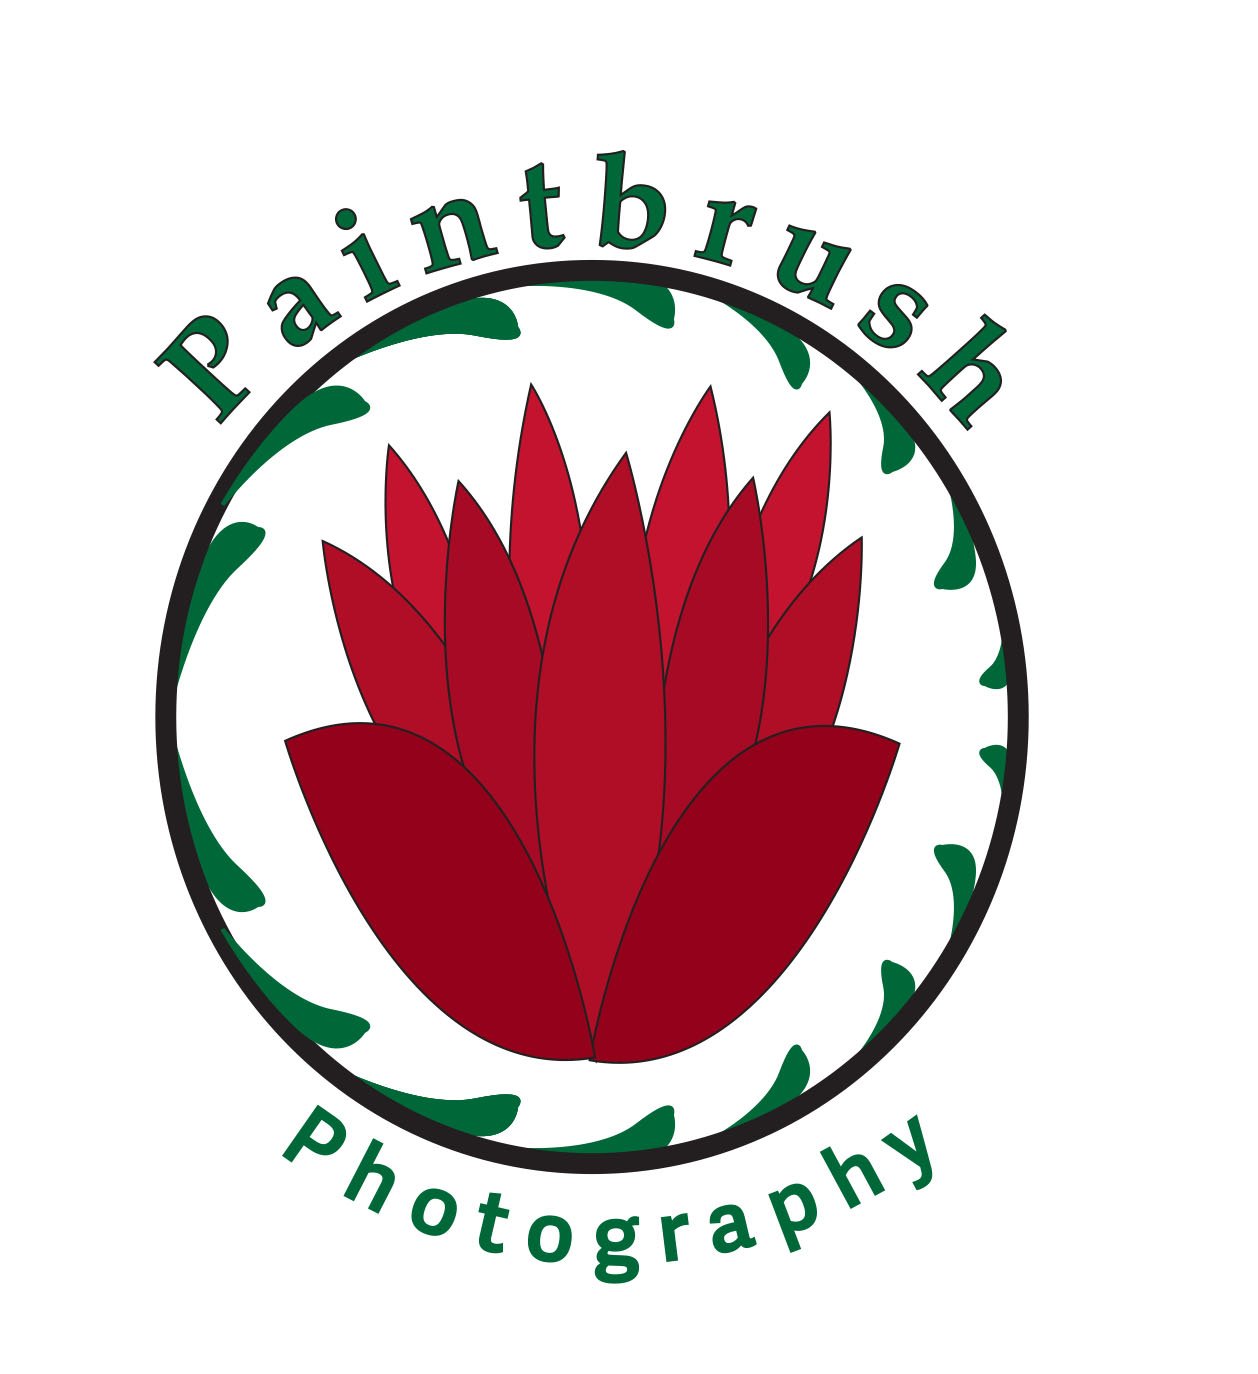 Paintbrush Photography